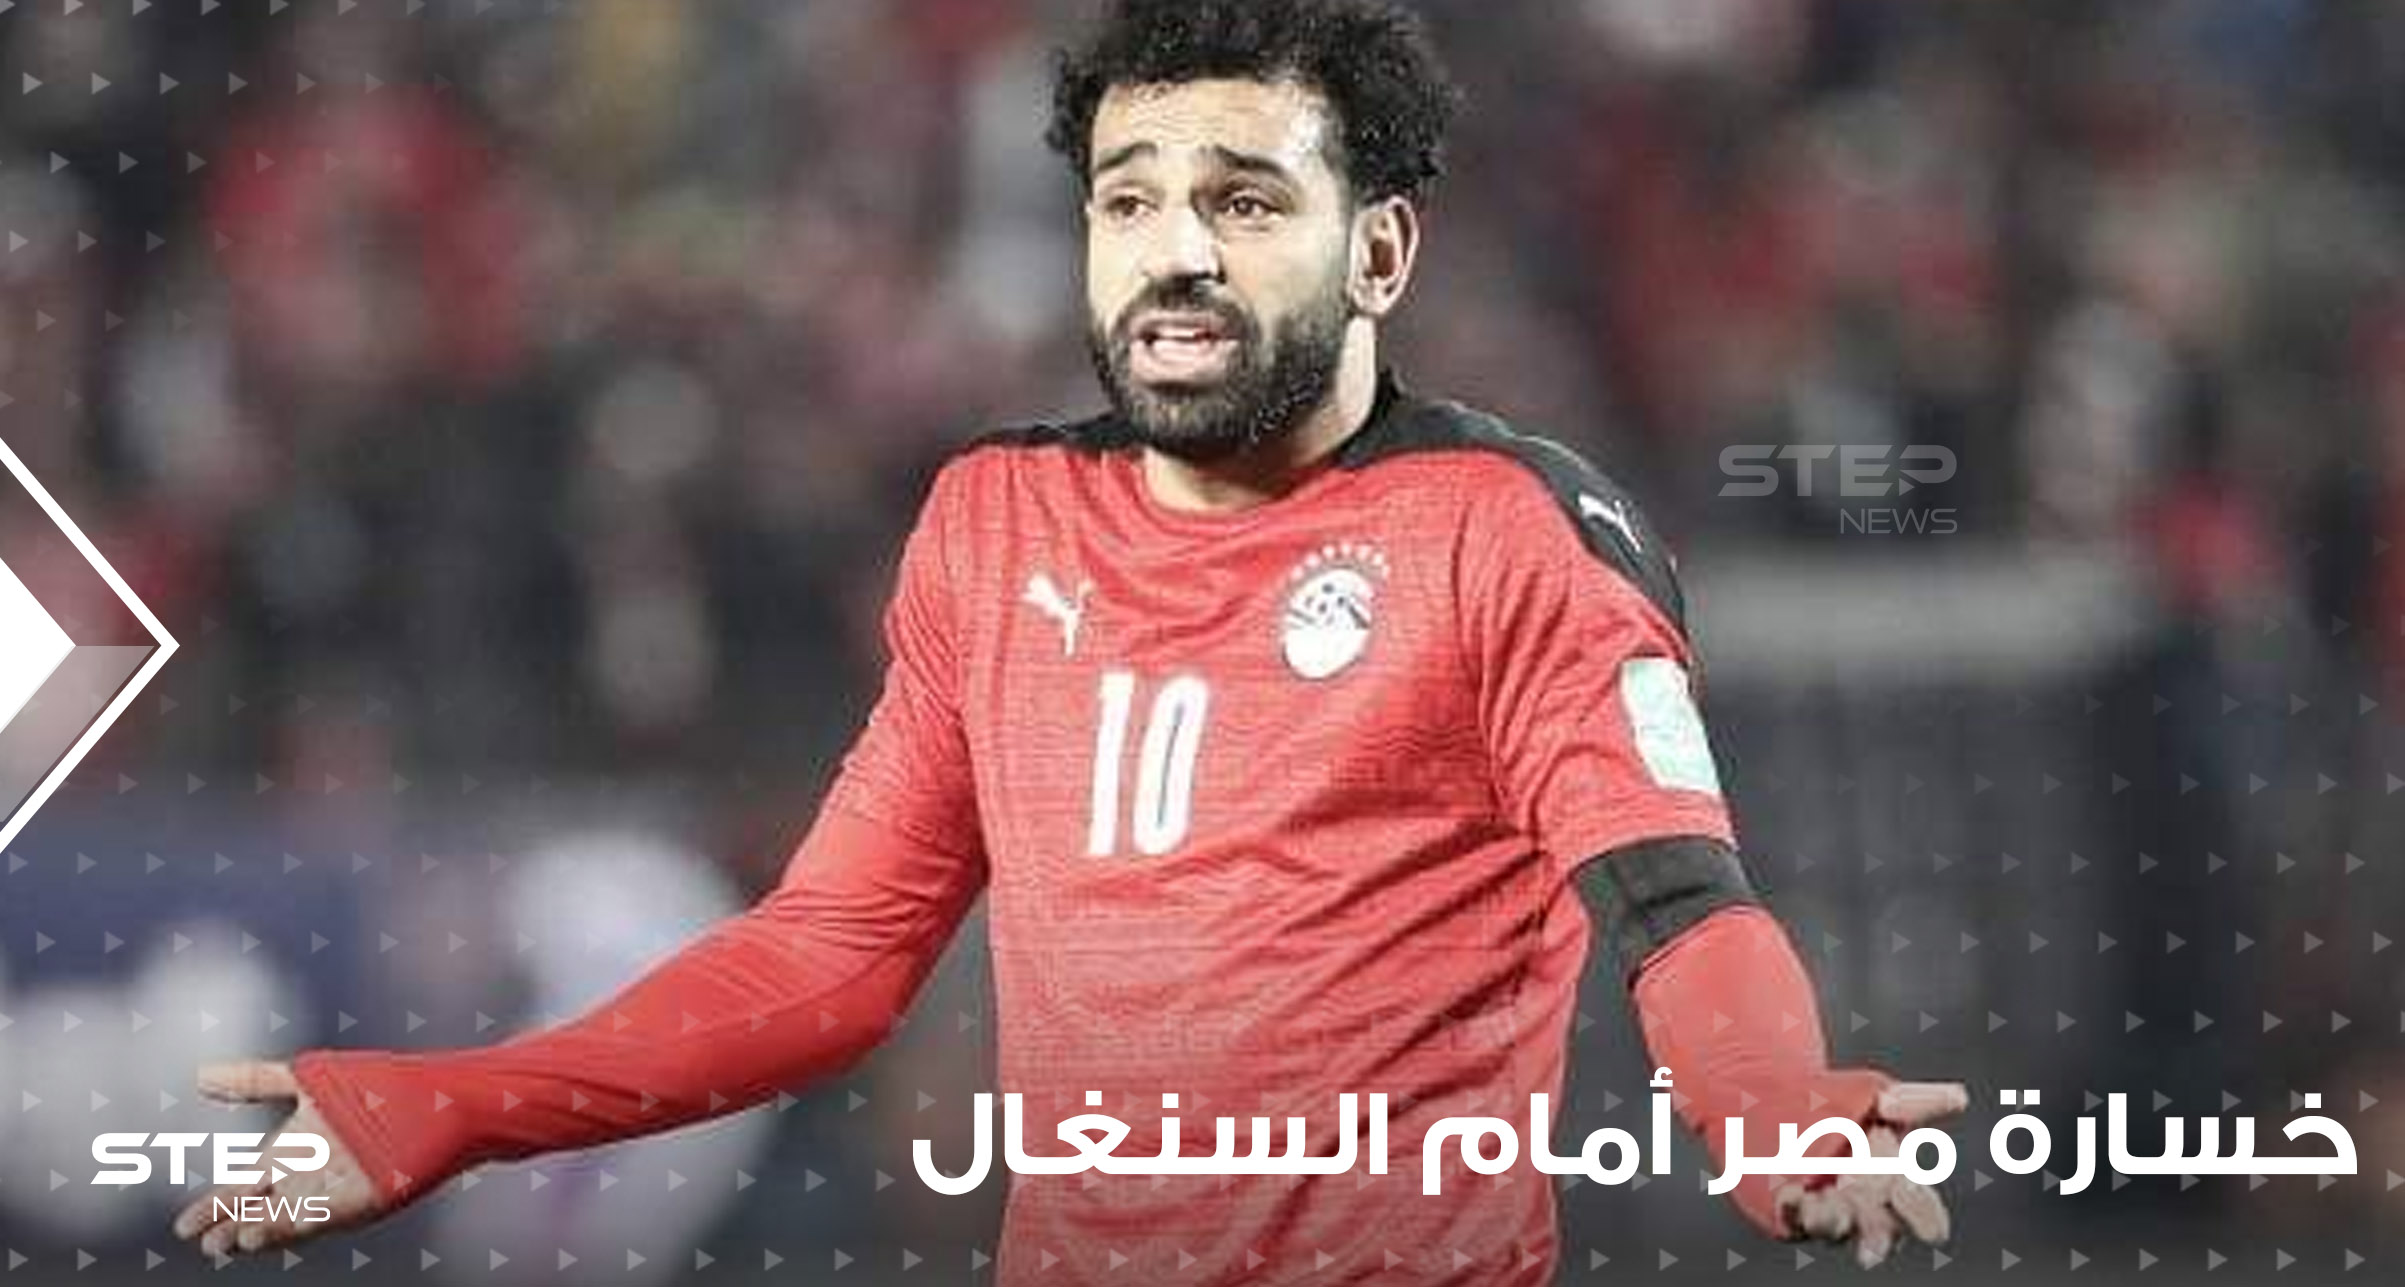 المنتخب المصري يخسر أمام نظيره السنغالي بركلات الترجيح والأخير يتأهل إلى نهائيات كأس العالم